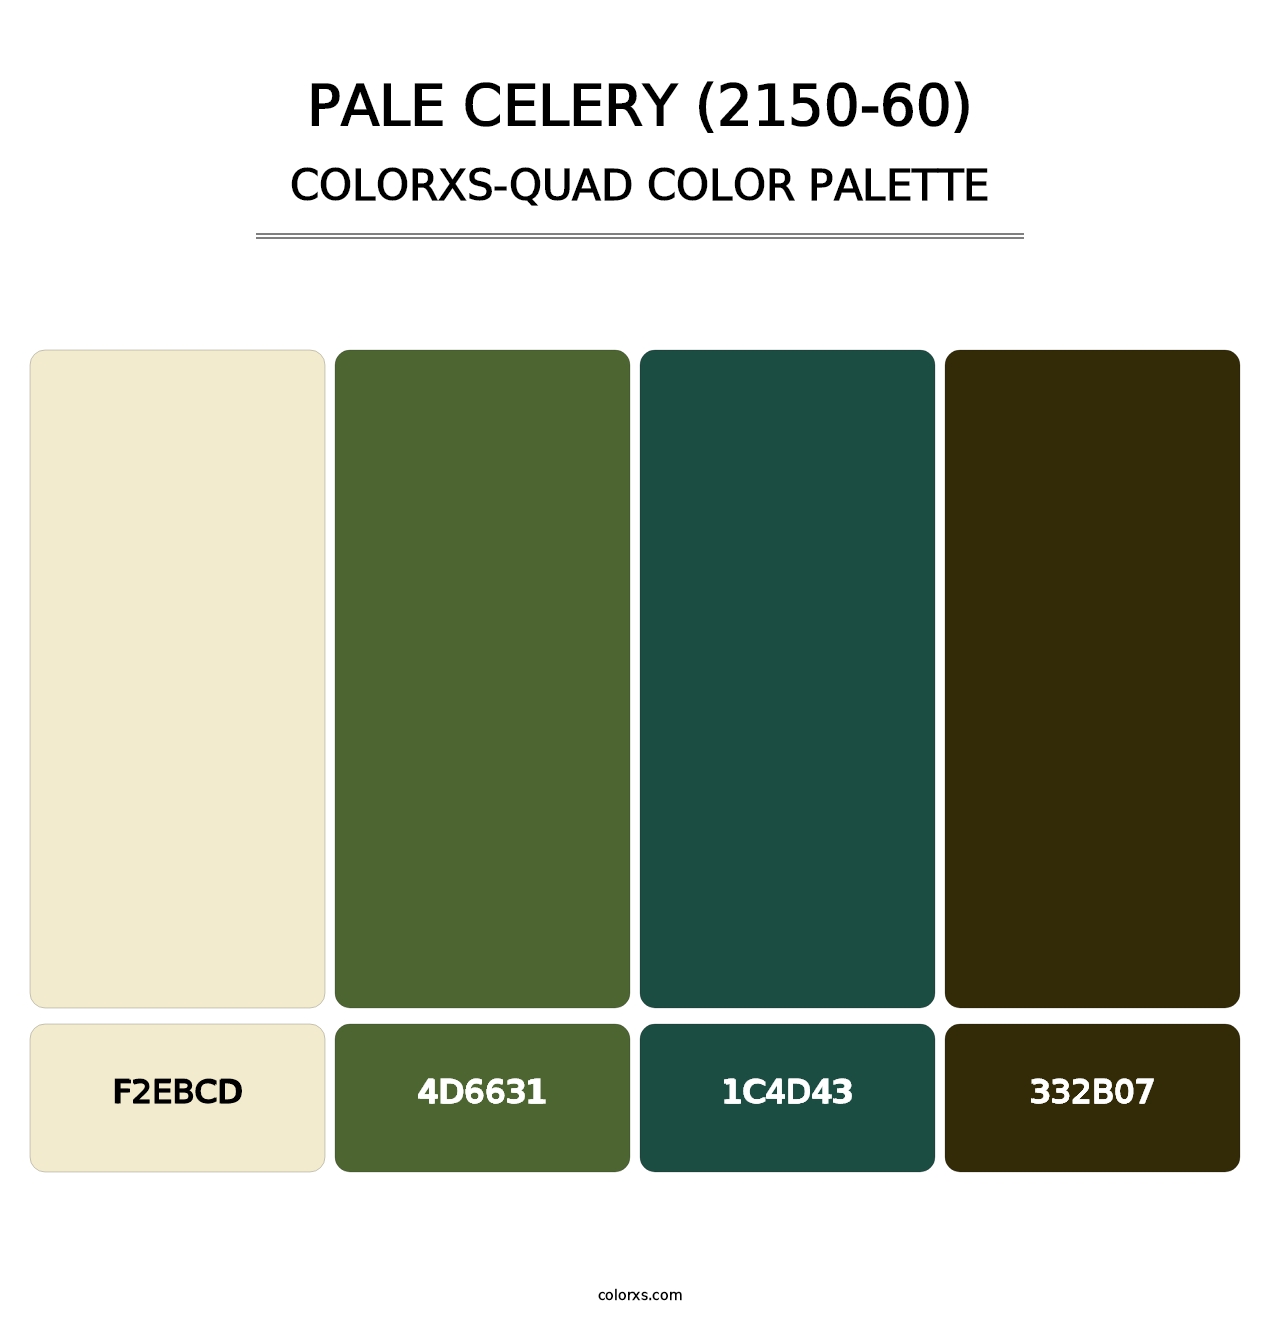 Pale Celery (2150-60) - Colorxs Quad Palette